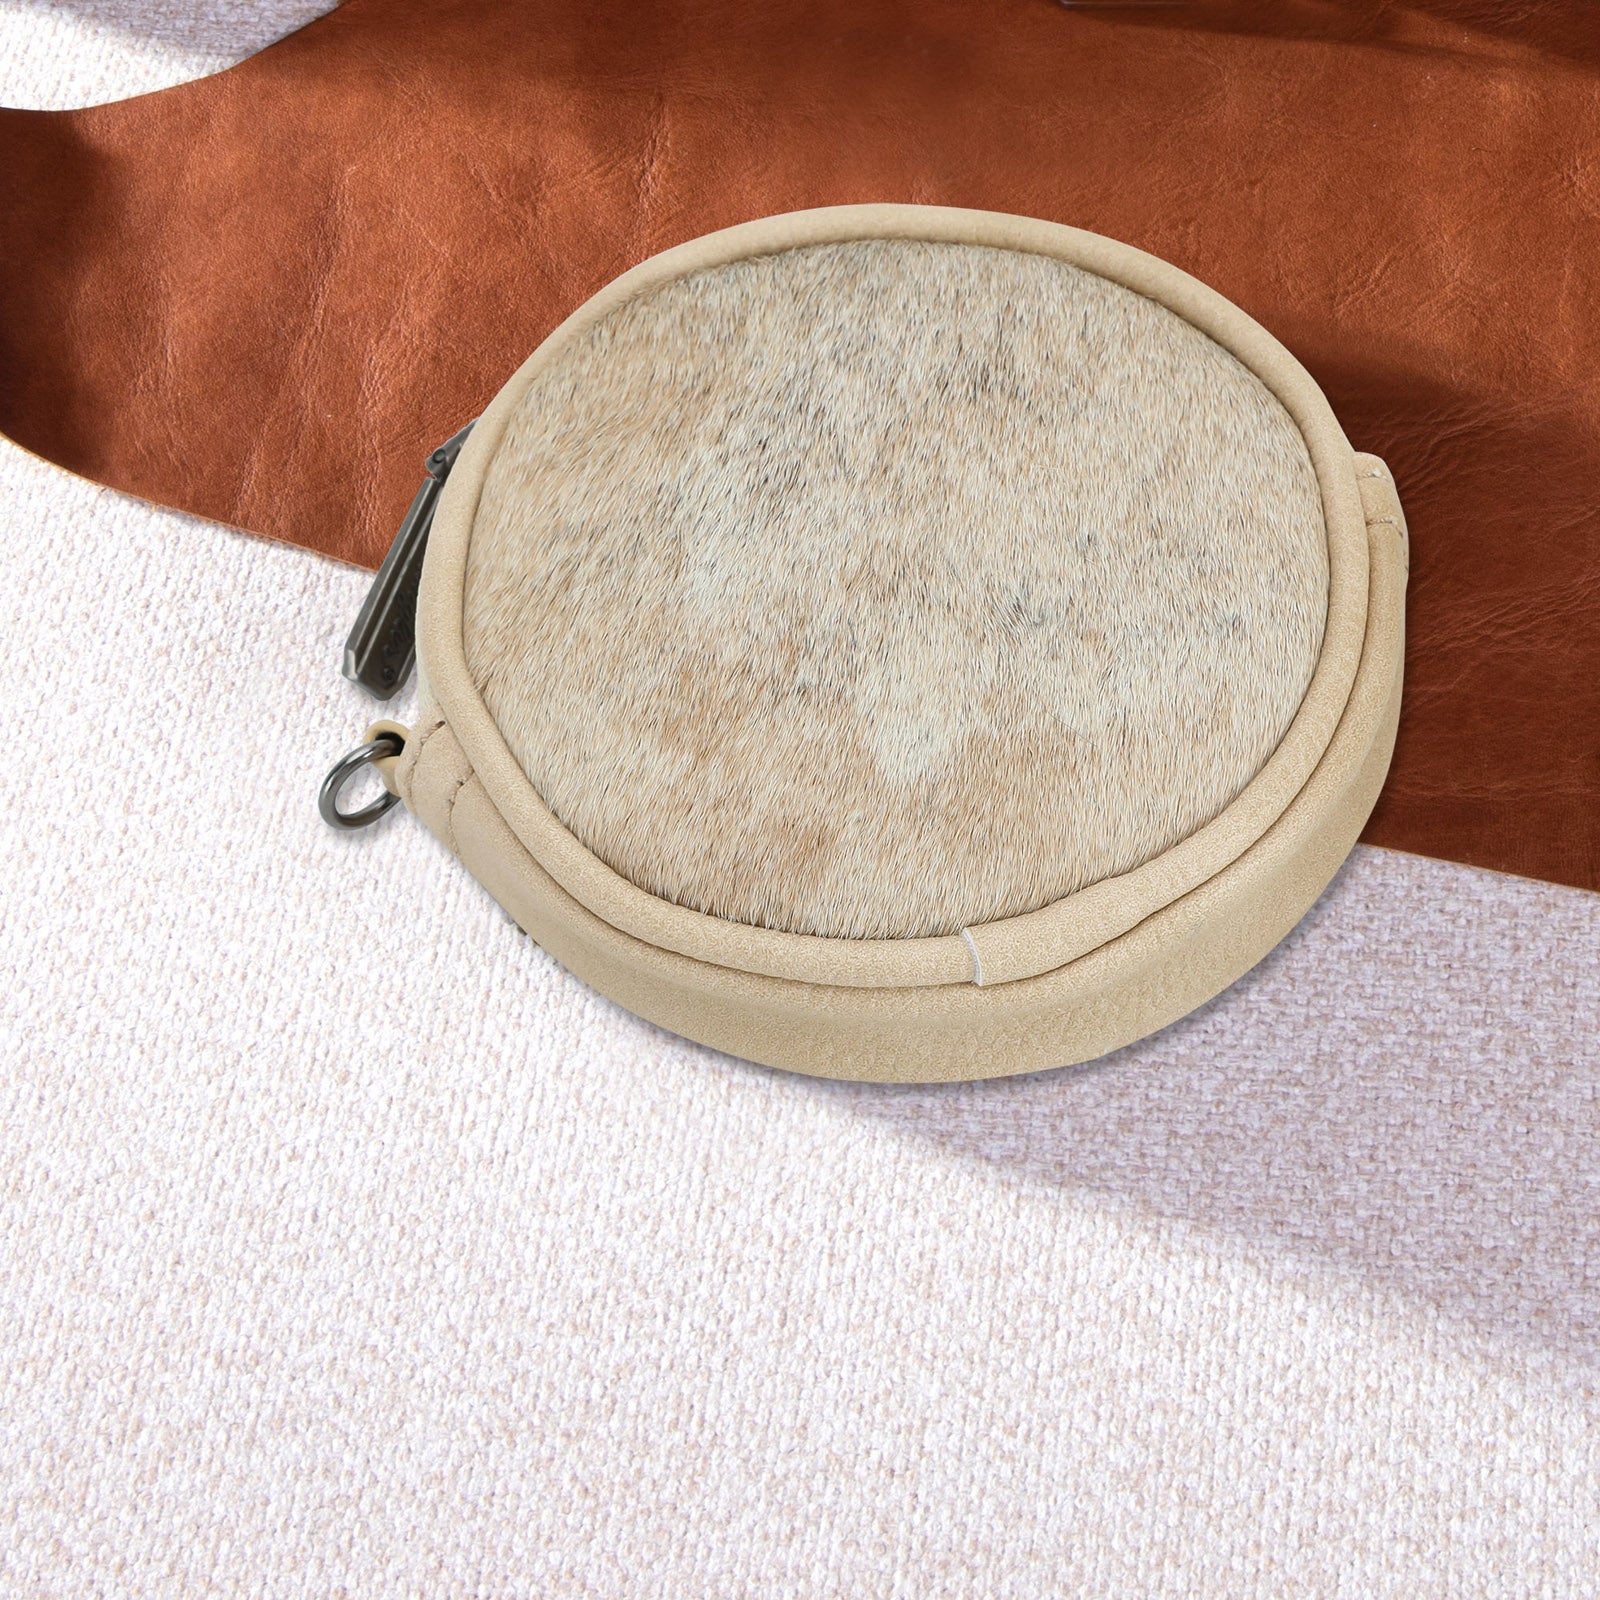 Wrangler Genuine Hair On Cowhide Circular Coin Pouch Bag Charm - Cowgirl Wear